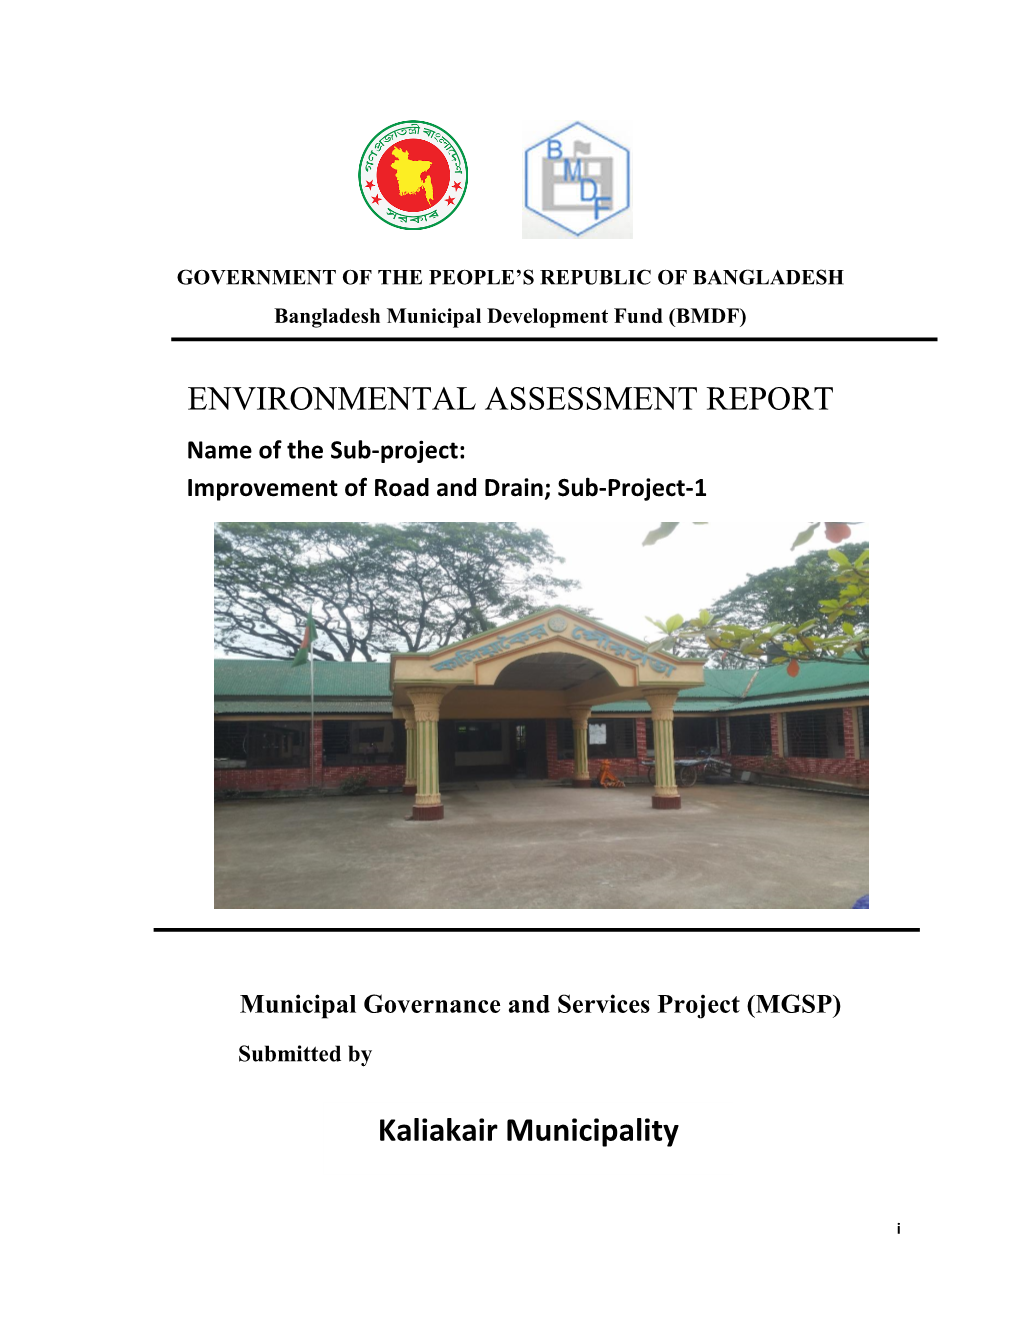 ENVIRONMENTAL ASSESSMENT REPORT Kaliakair Municipality